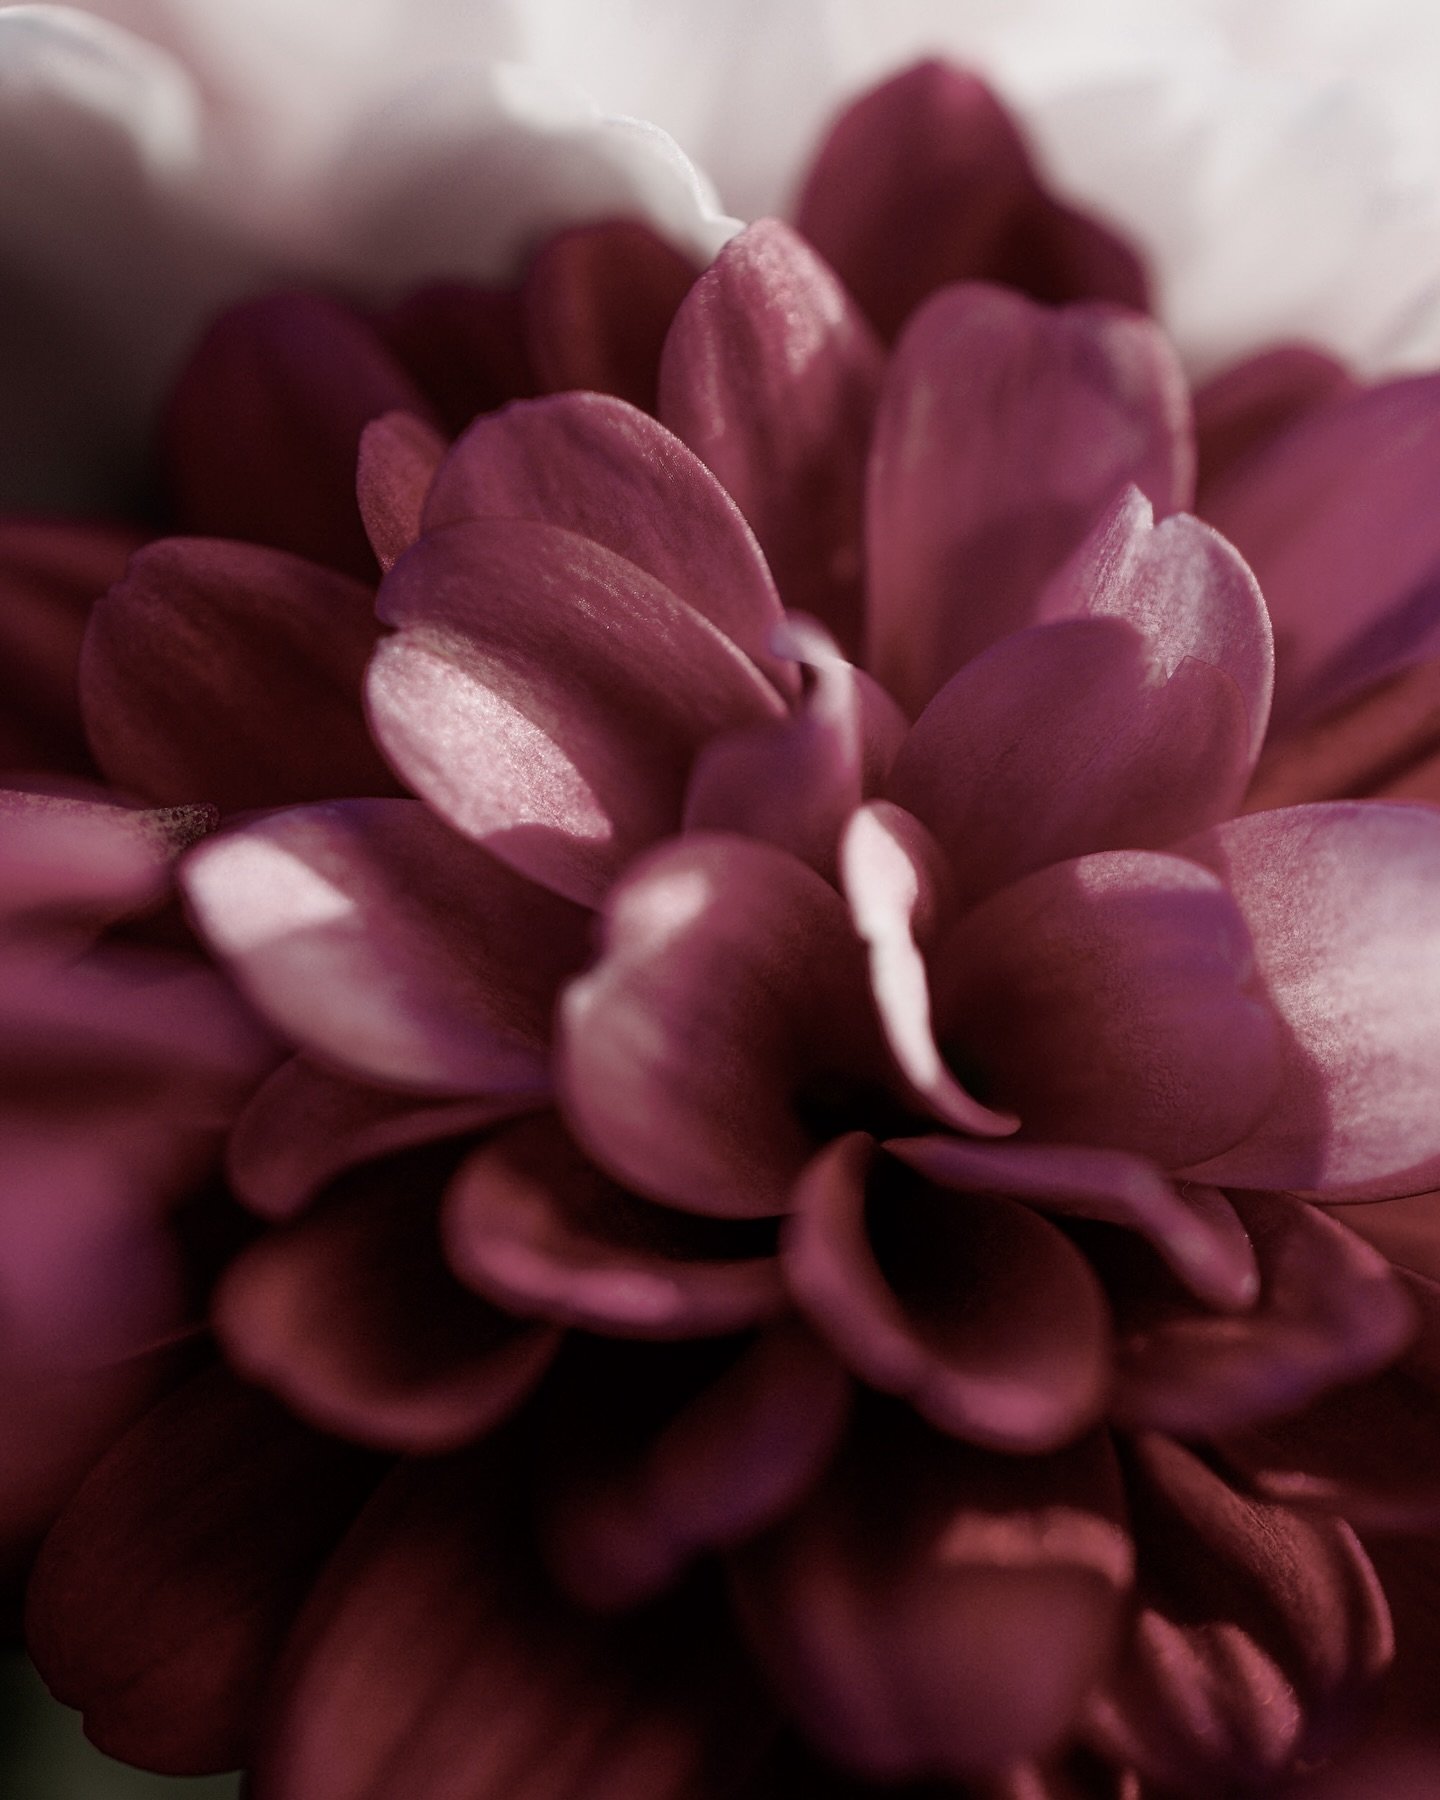 Blush colour but make it floral.

🏷️ 
#nikonuk #nikoneurope #dslr #photographer #exposure #throughthelens @nikonuknordic @nikoneurope #flower #flowerphotography #flowerpower #flowerphoto #macro #macroflower #macroflowers_kingdom #macroflowershot #ma